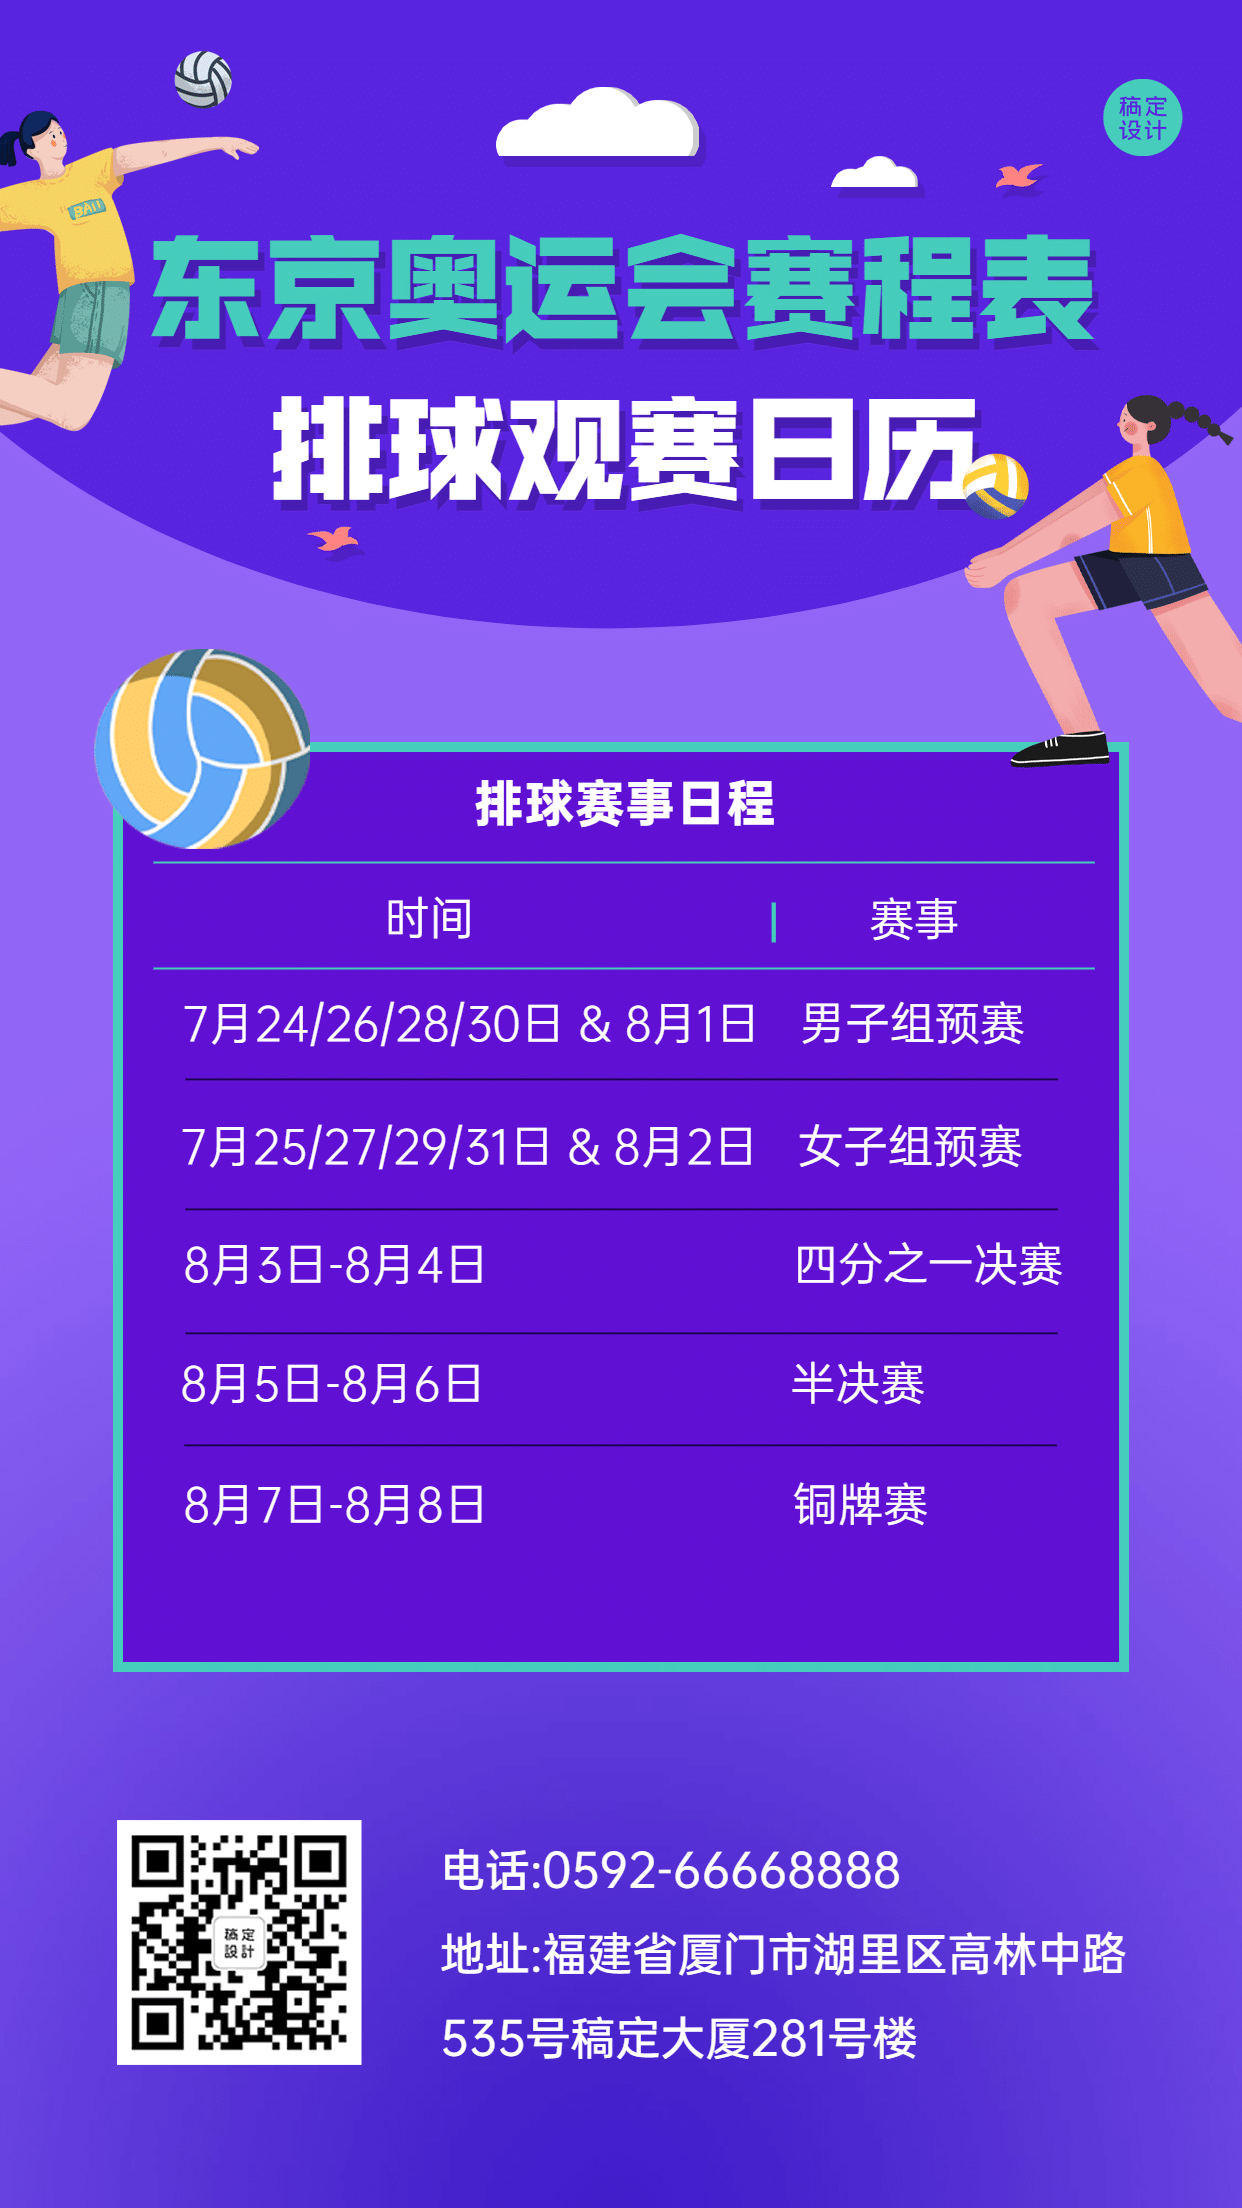 东京奥运会排球赛事日历手机海报